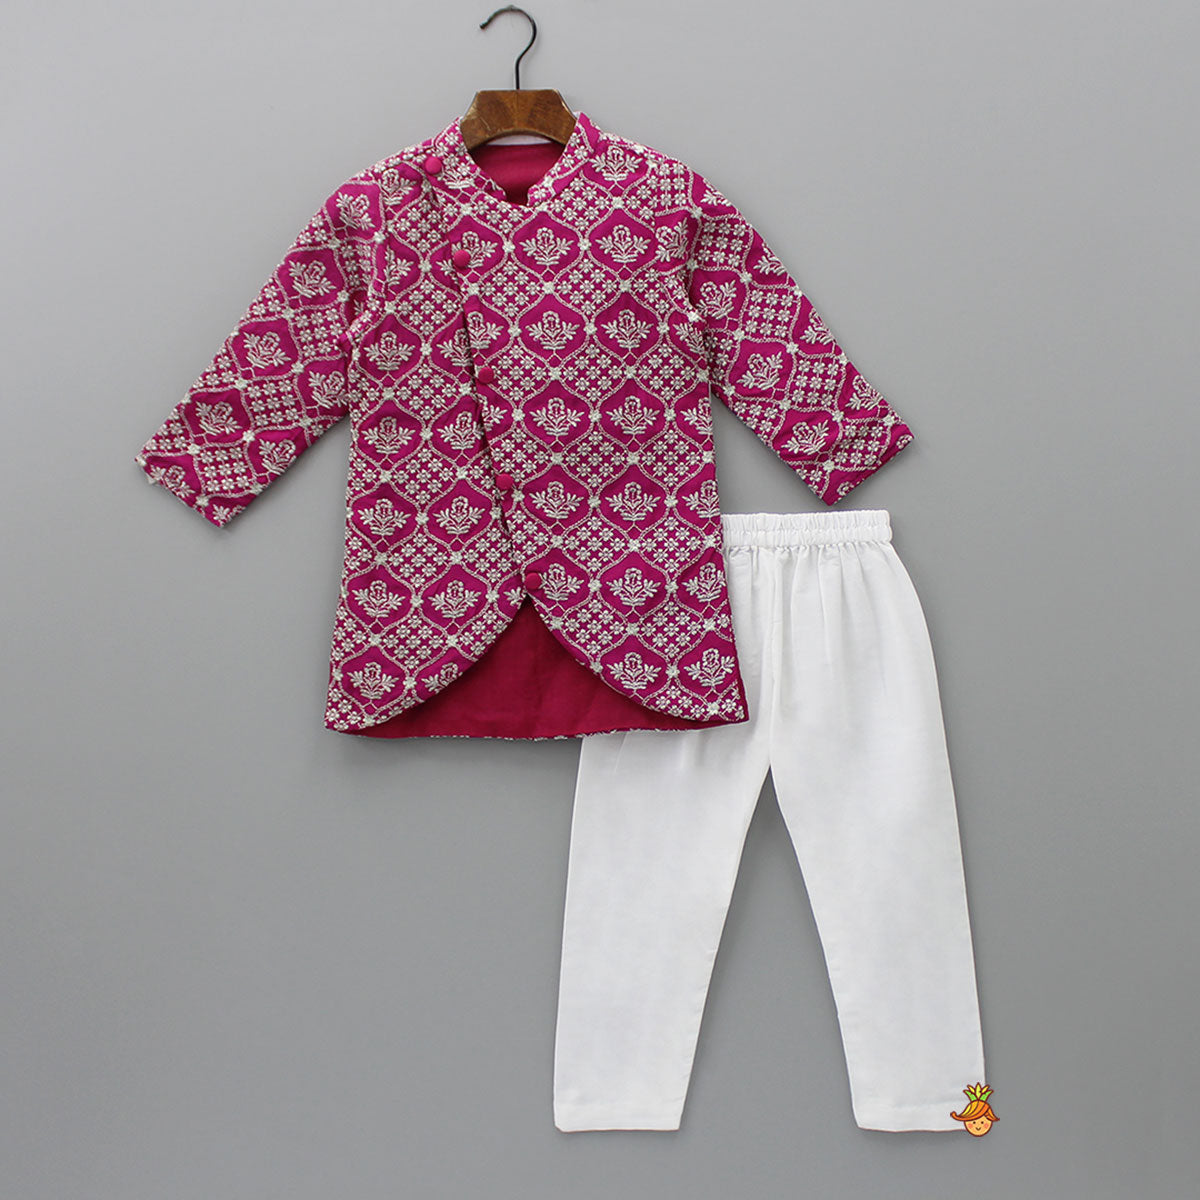 Embroidered Sherwani And White Pyjama